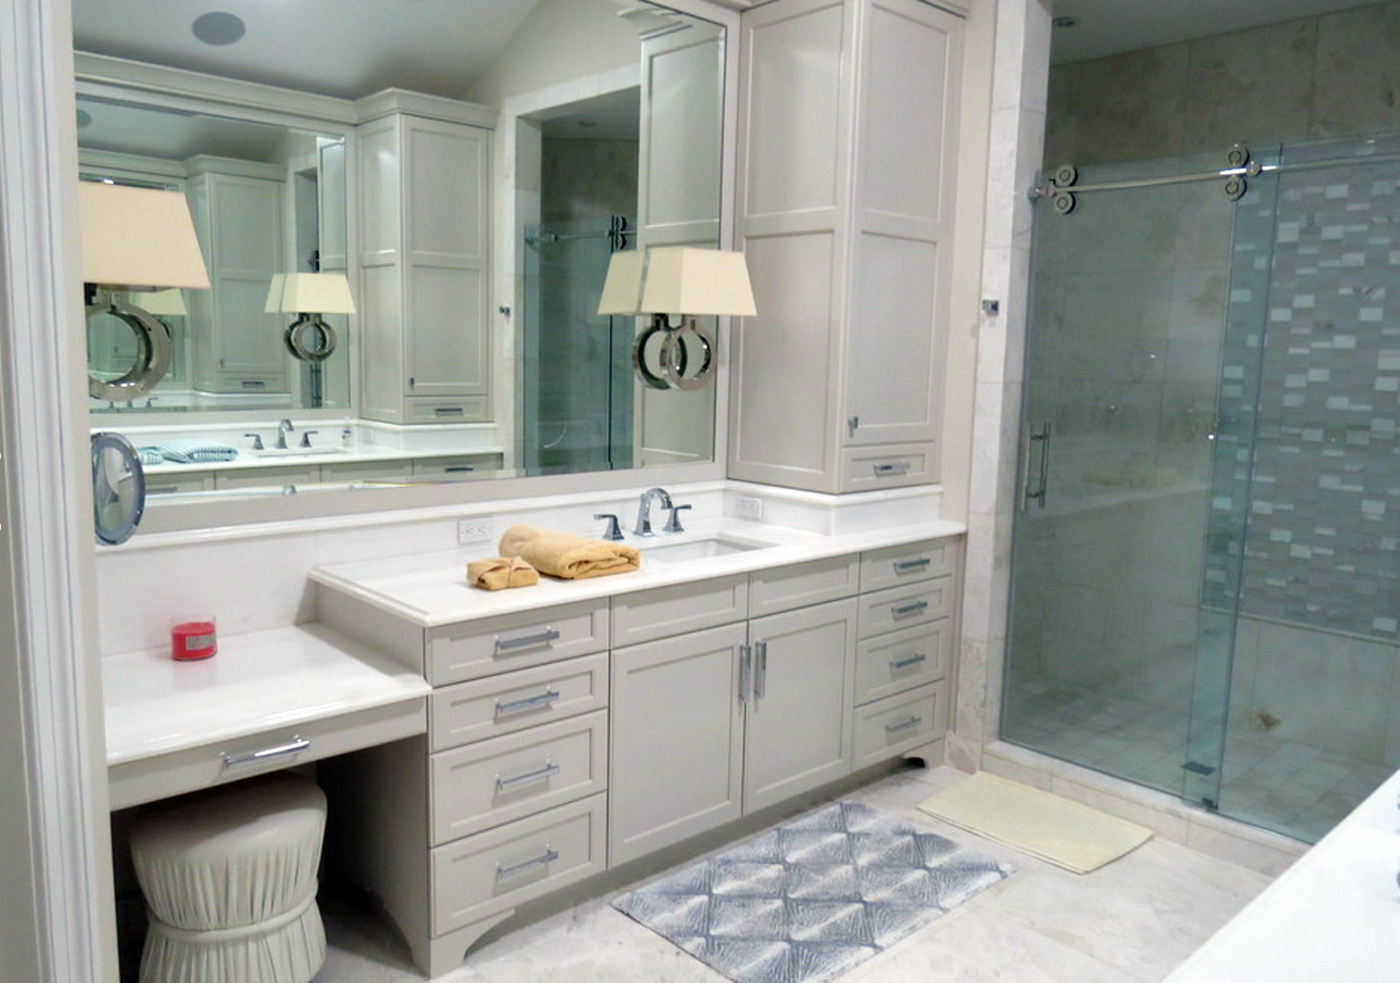 custom cabinets kitchen design bathroom design Remodeling transitional